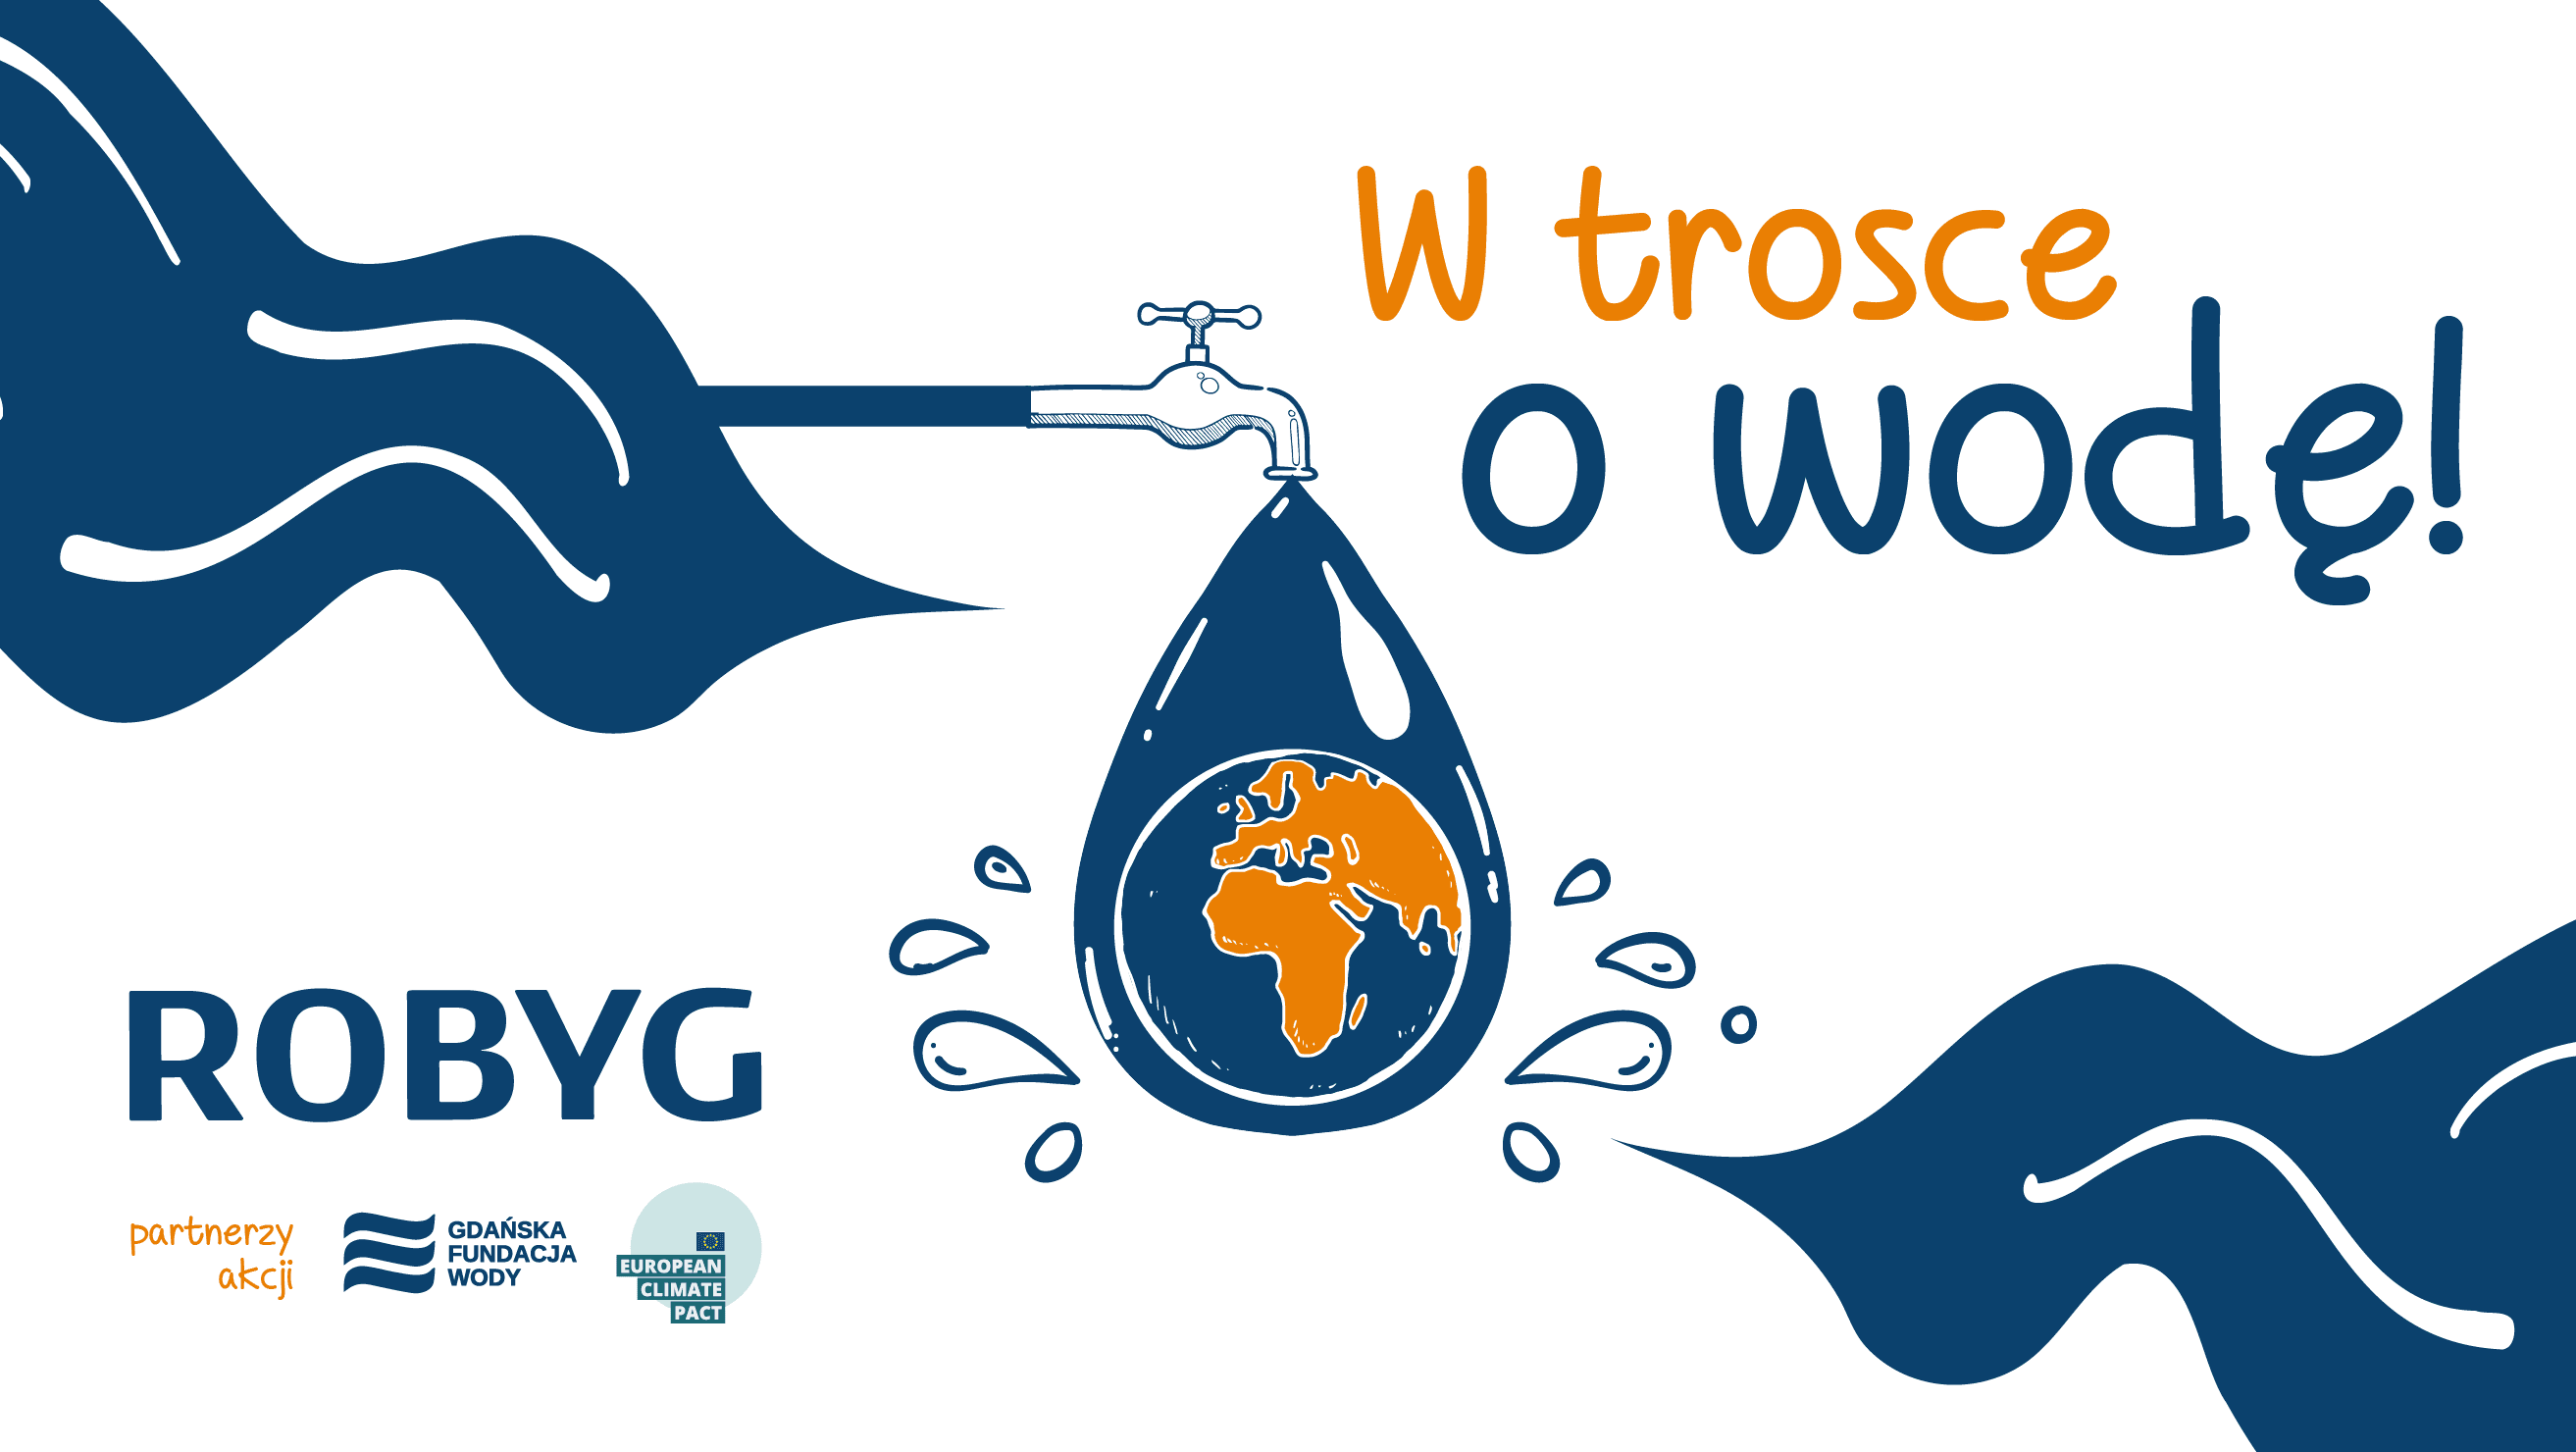 Skąd się bierze woda w kranie i jak ją oszczędzać – ROBYG edukuje dzieci we współpracy z Gdańską Fundacją Wody oraz Europejskim Paktem na Rzecz Klimatu 